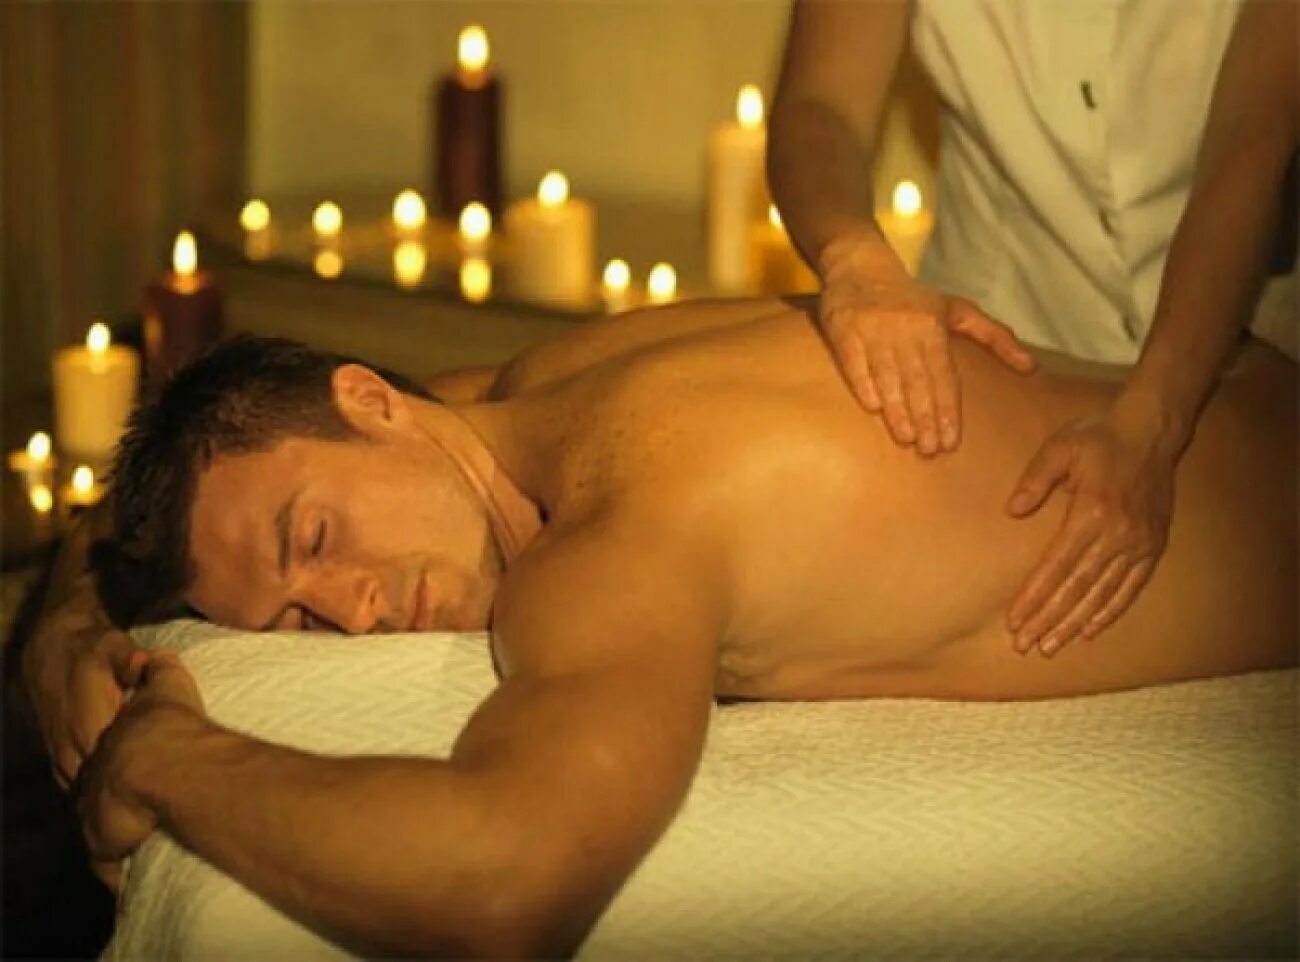 Чувственный массаж видео. Массаж мужчине. Красивый массаж тела. Массаж релаксирующий для мужчин. Спа для мужчин.